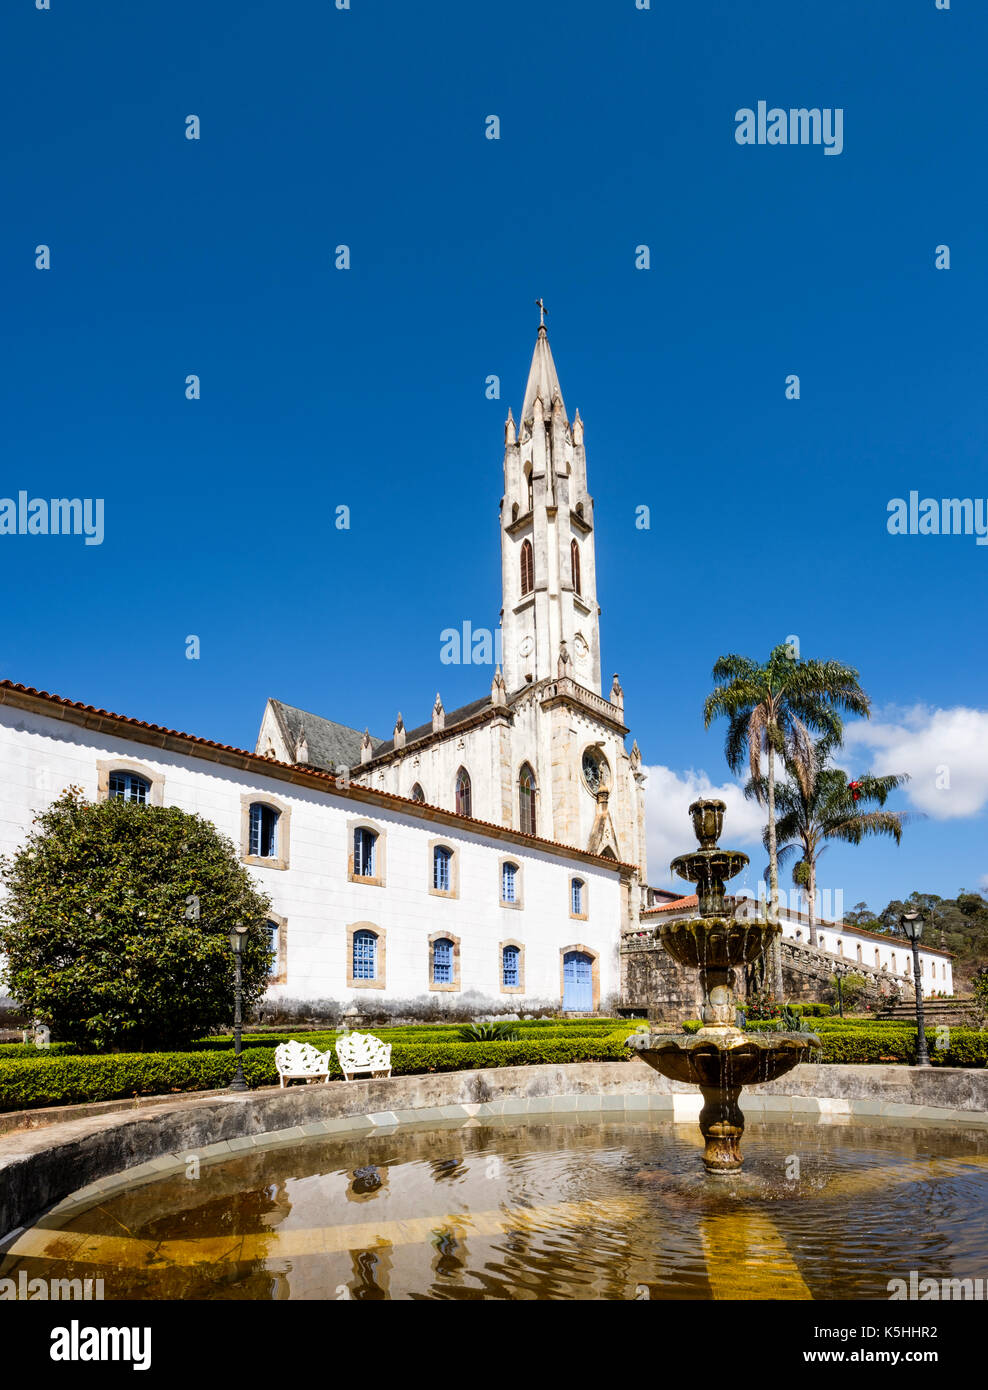 Vorgarten und Brunnen von Caraca Sanctuary, ein Naturschutzgebiet mit einer neogotischen Kirche, Catas Altas, Minas Gerais, Brasilien. Stockfoto